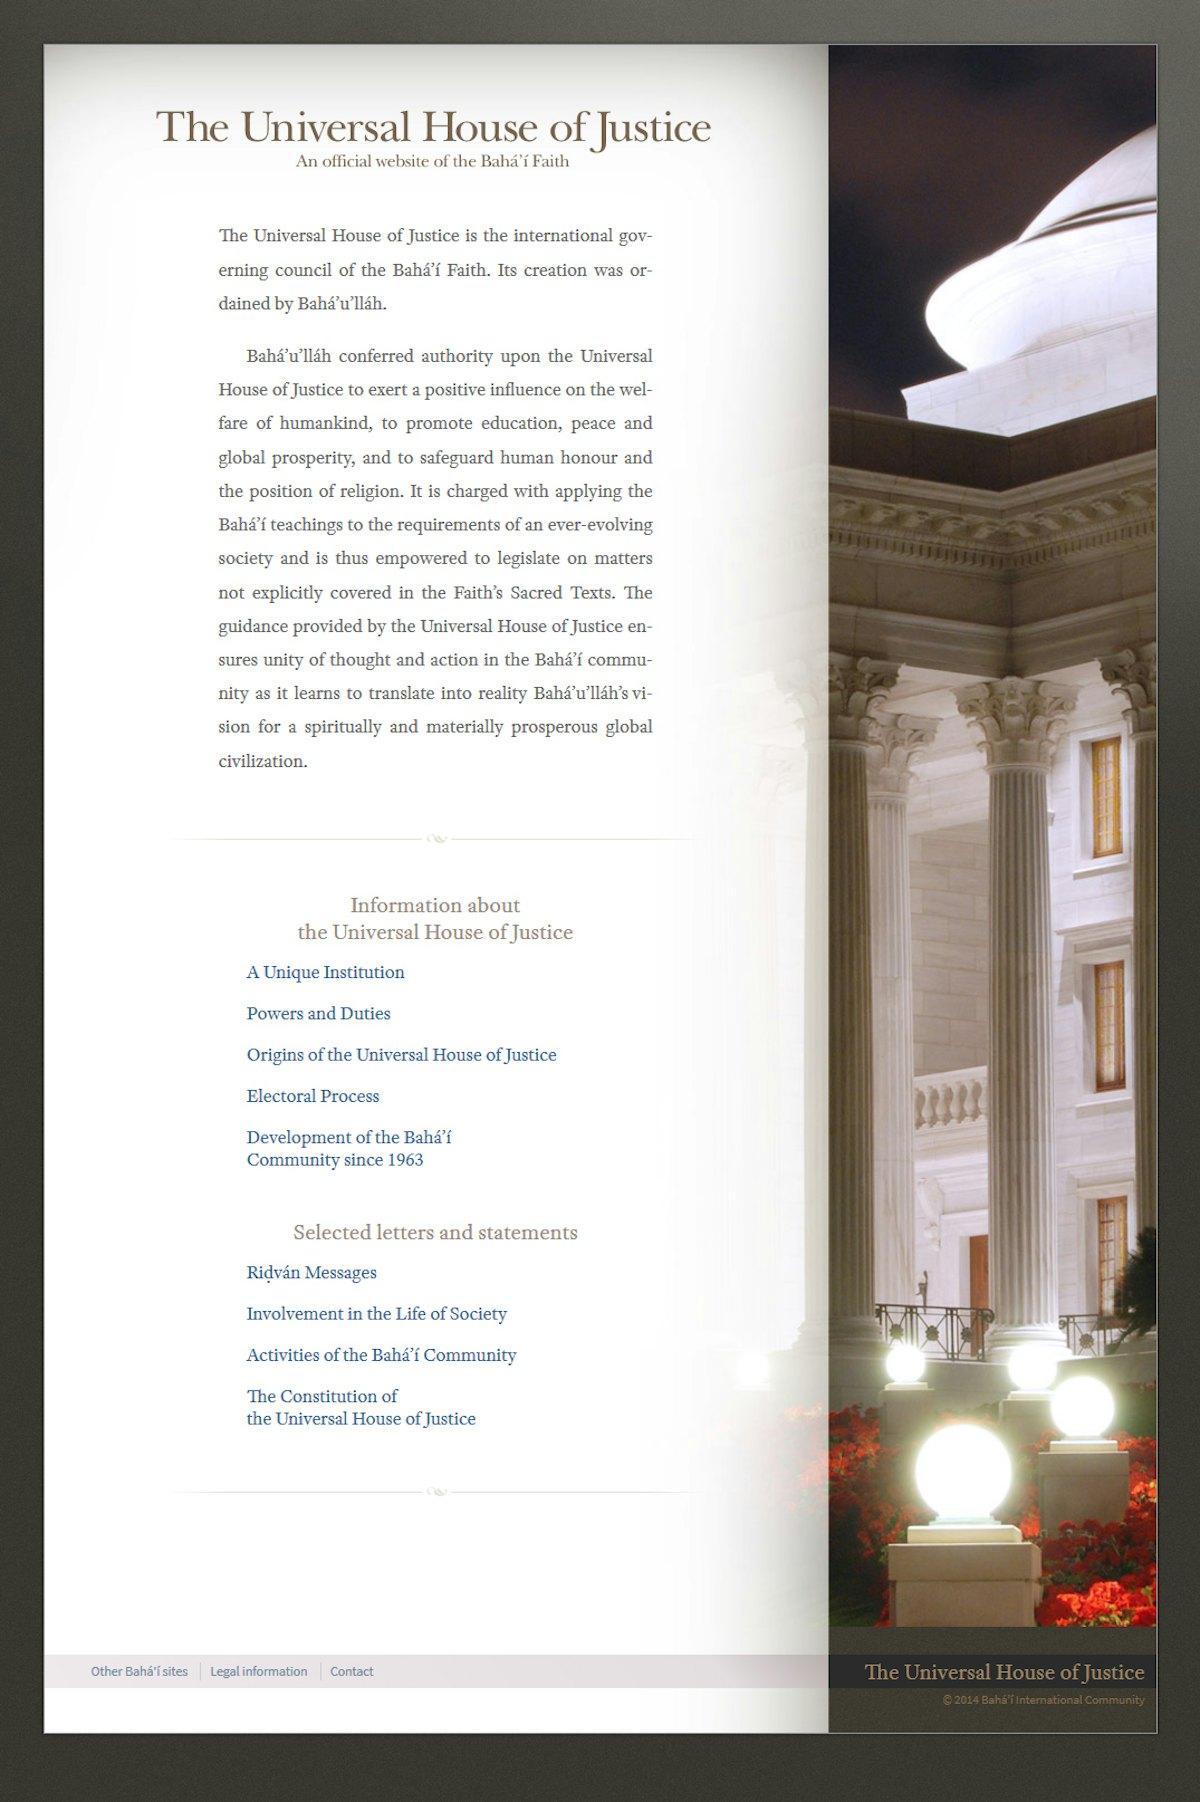 Sitio web oficial de la Casa Universal de Justicia